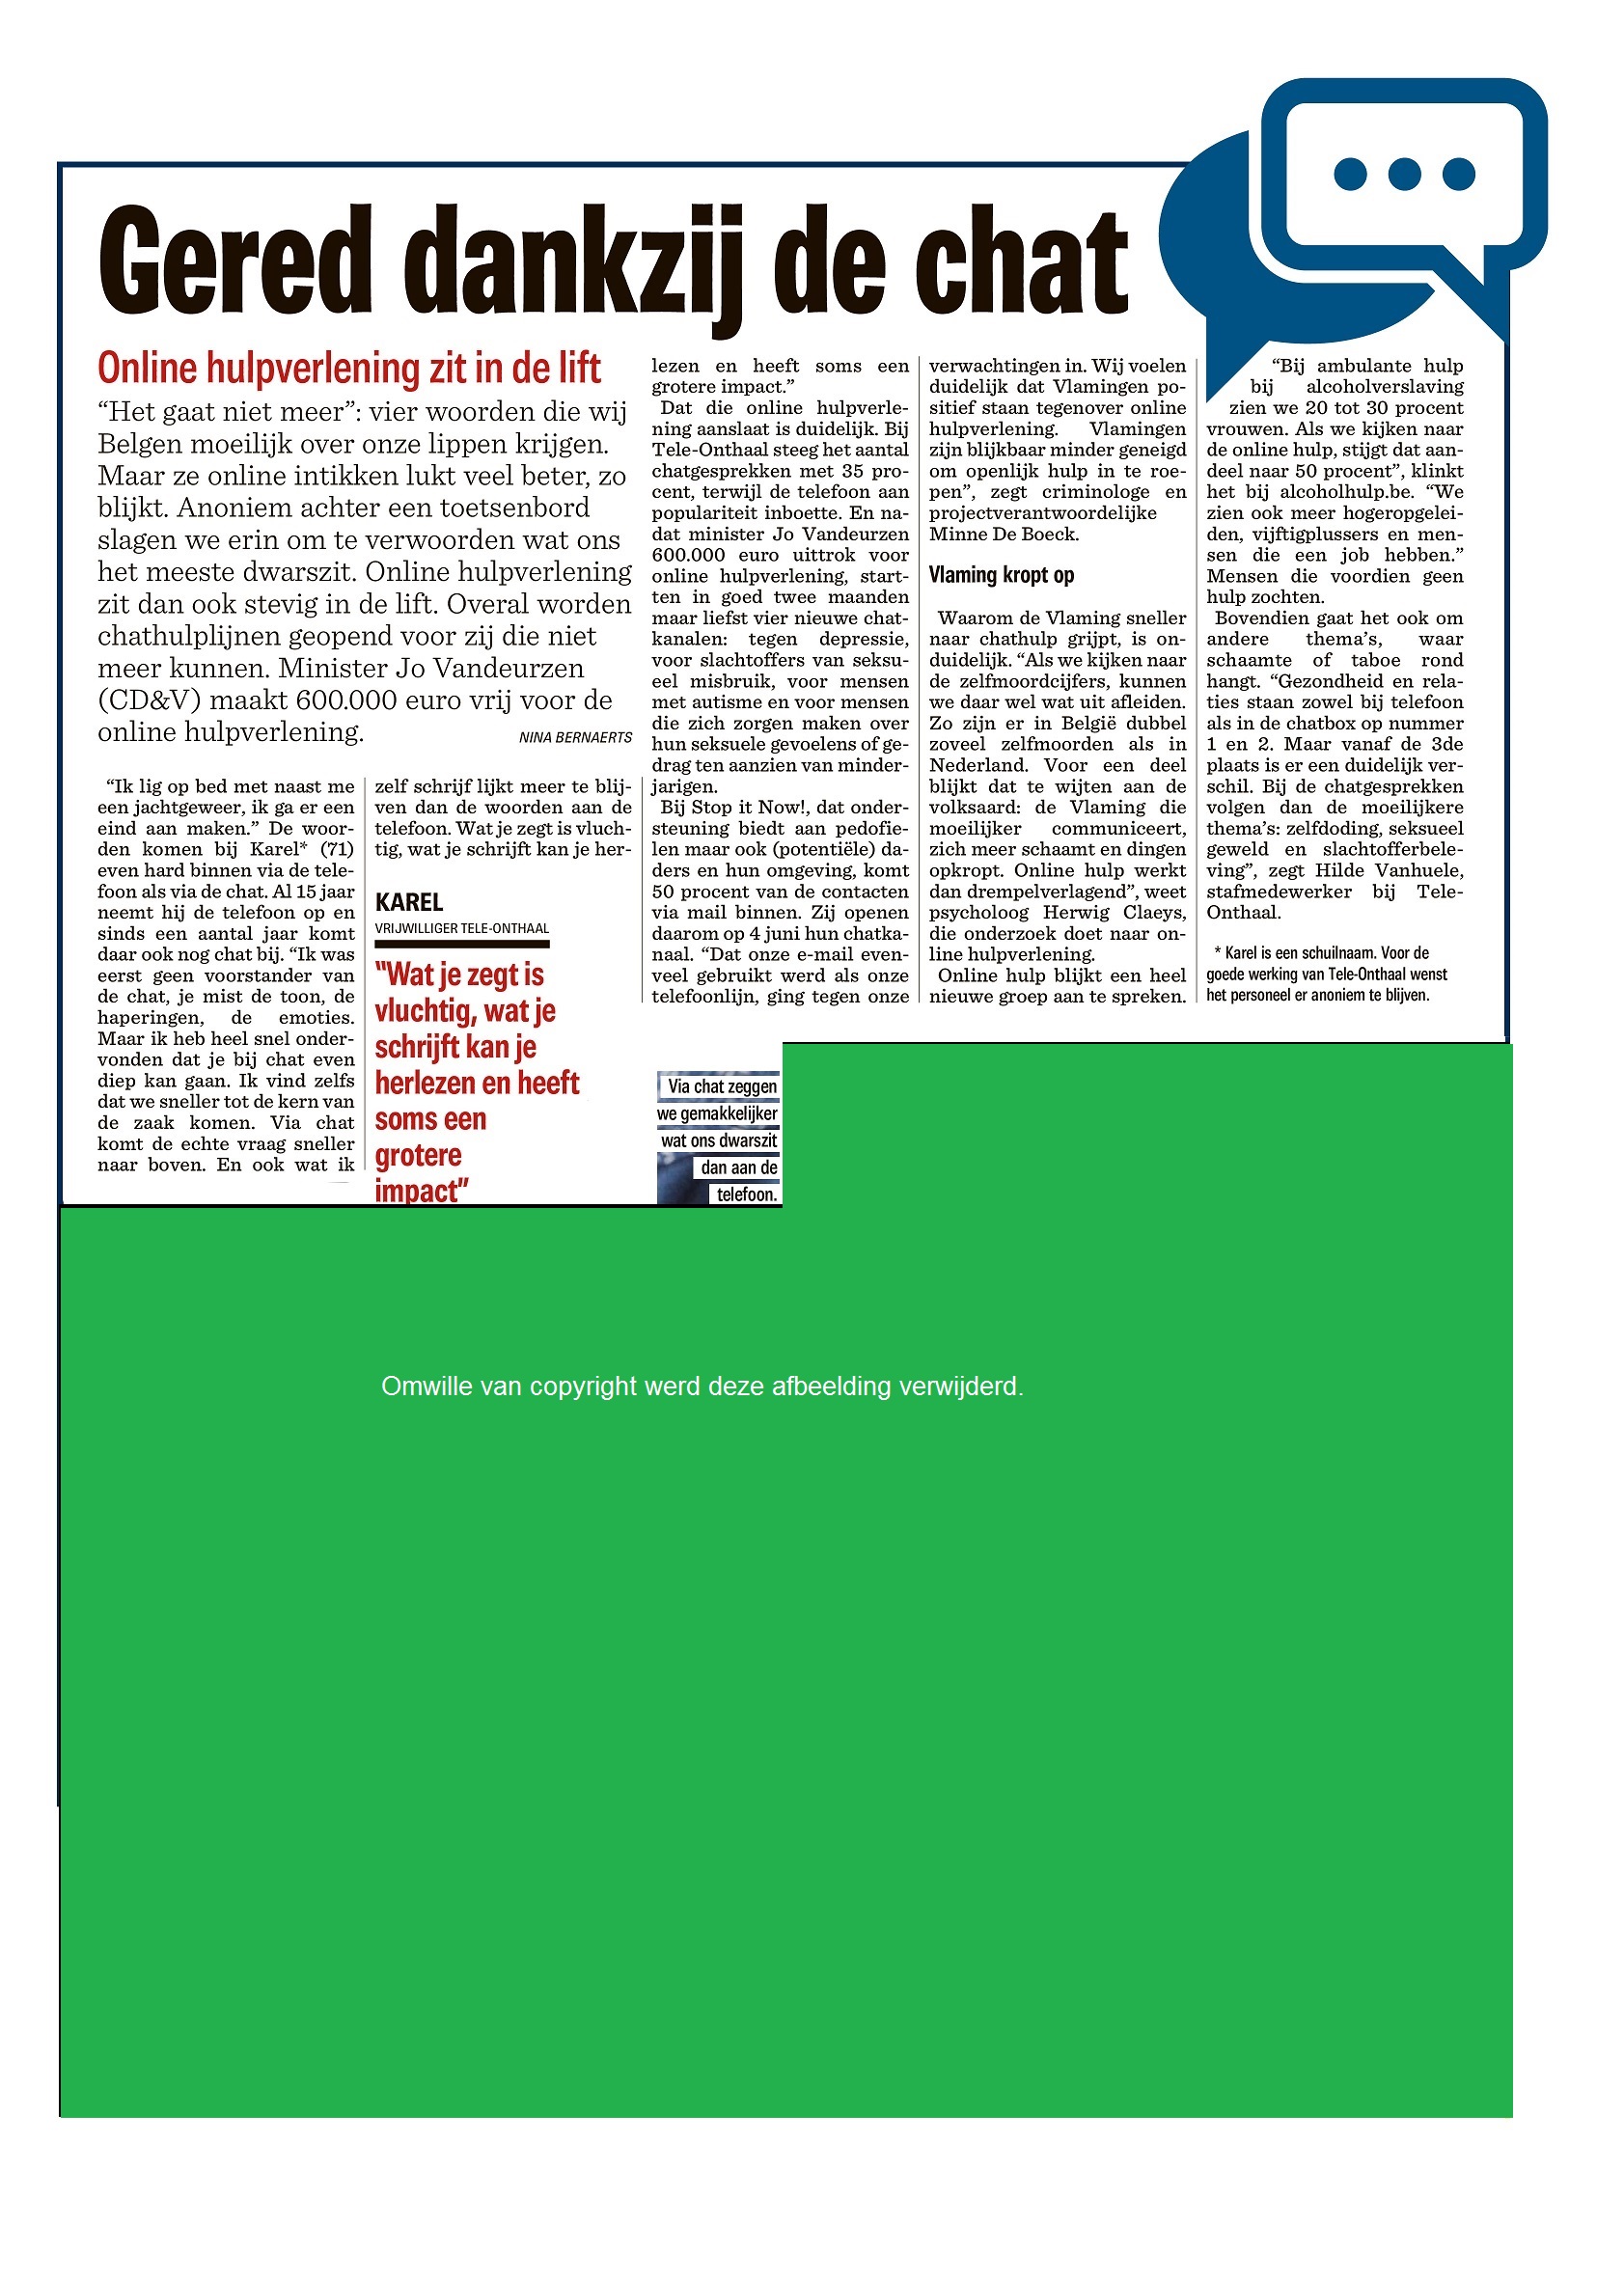 20190427 Het Nieuwsblad Antwerpen p 15 groen